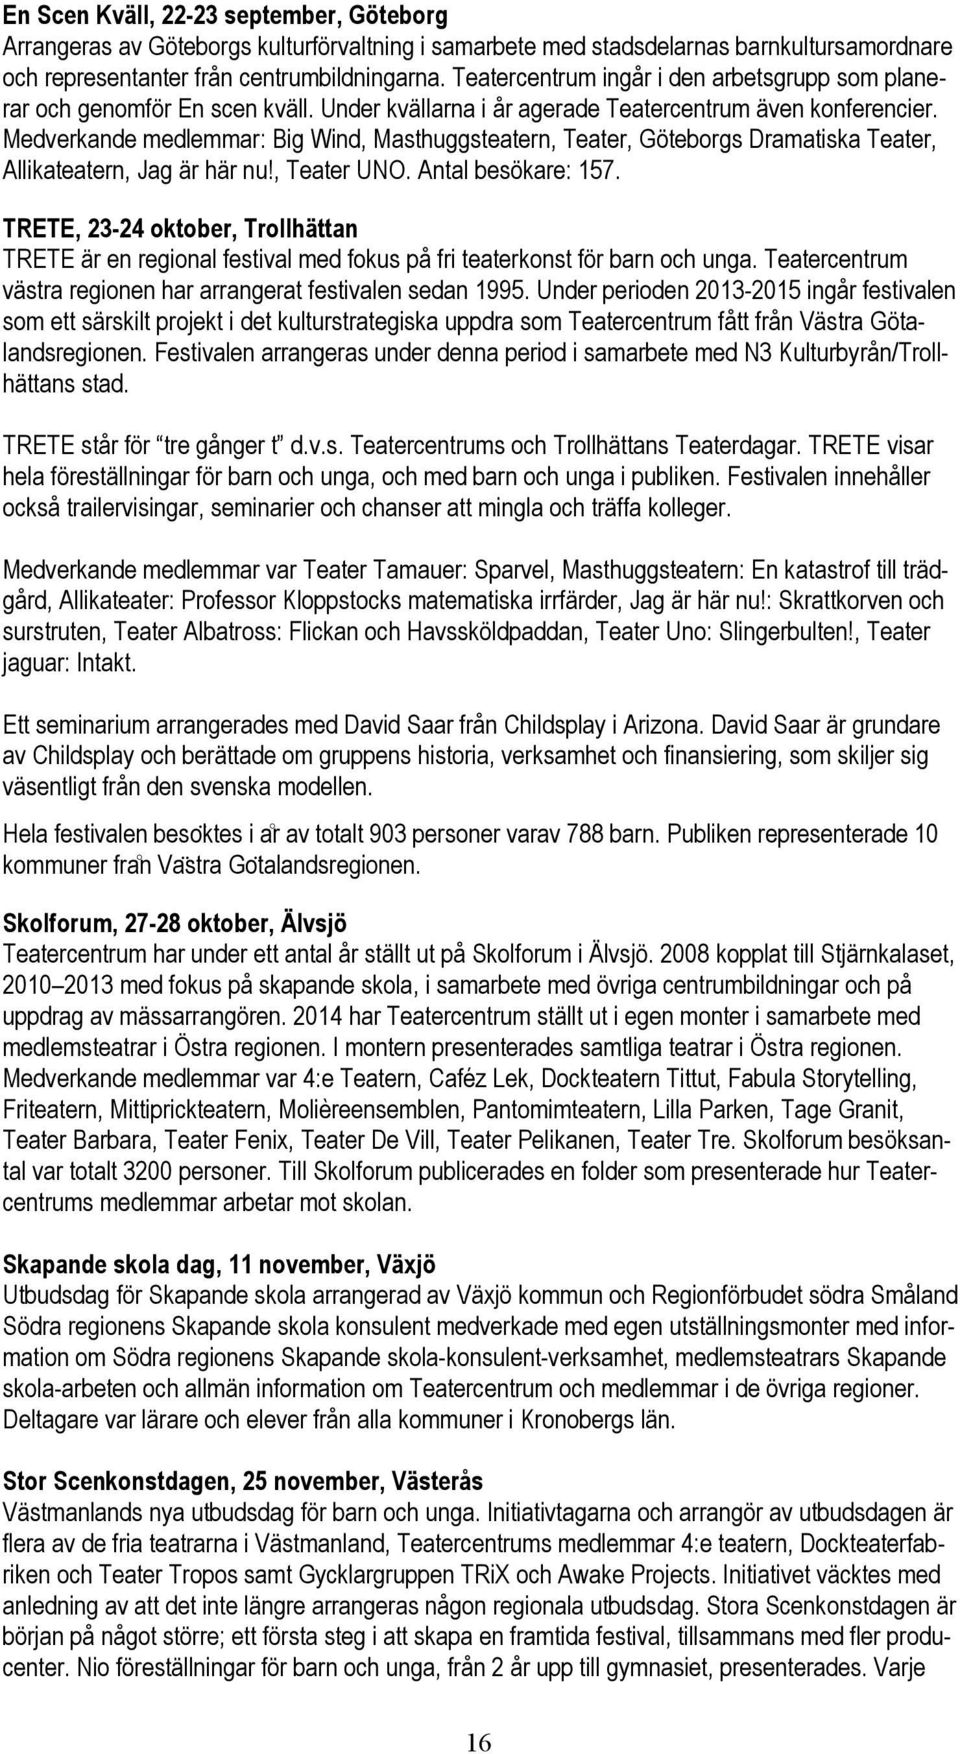 Medverkande medlemmar: Big Wind, Masthuggsteatern, Teater, Göteborgs Dramatiska Teater, Allikateatern, Jag är här nu!, Teater UNO. Antal besökare: 157.